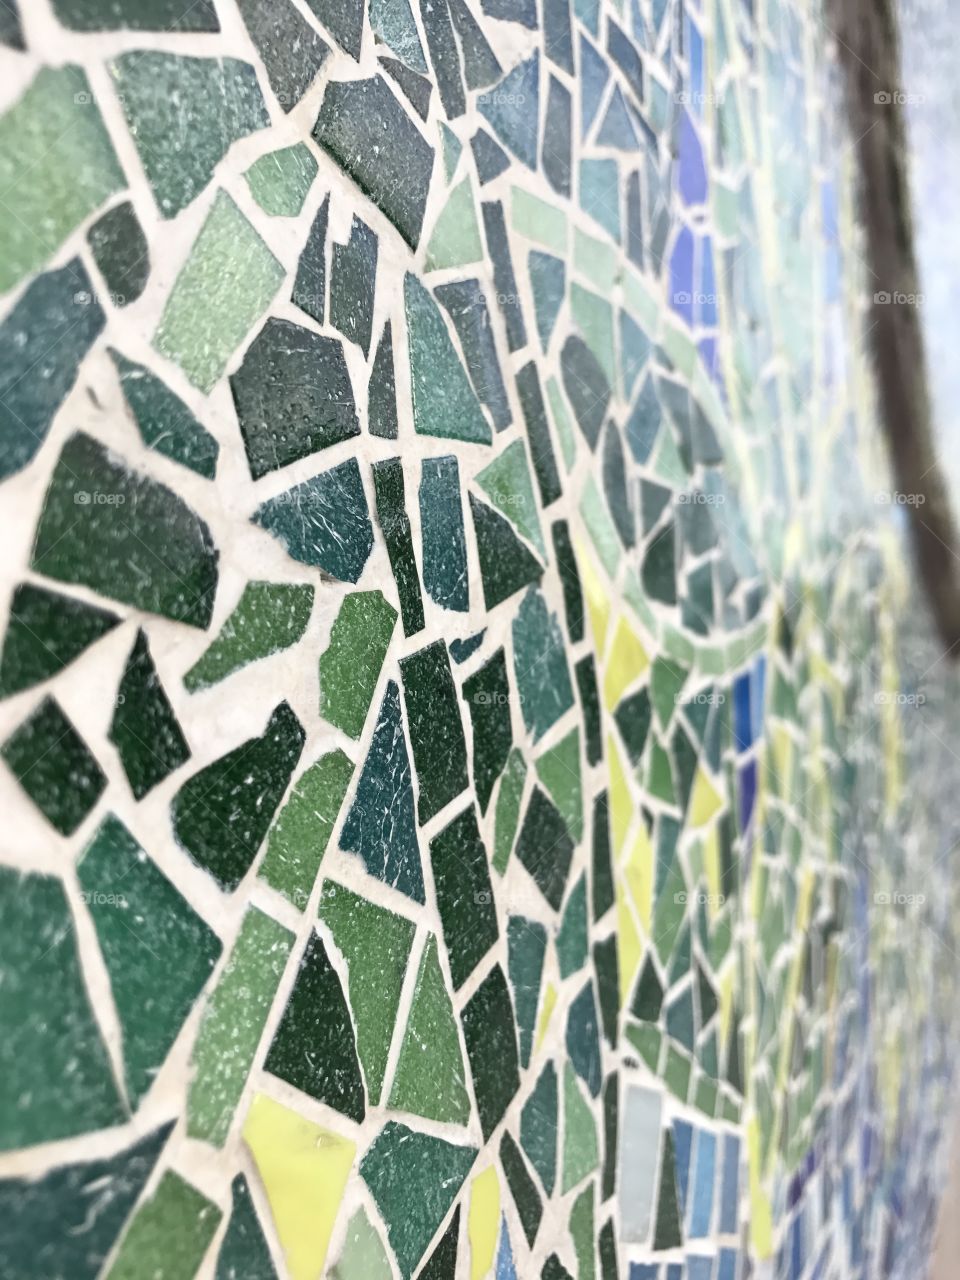 Mosaic up close